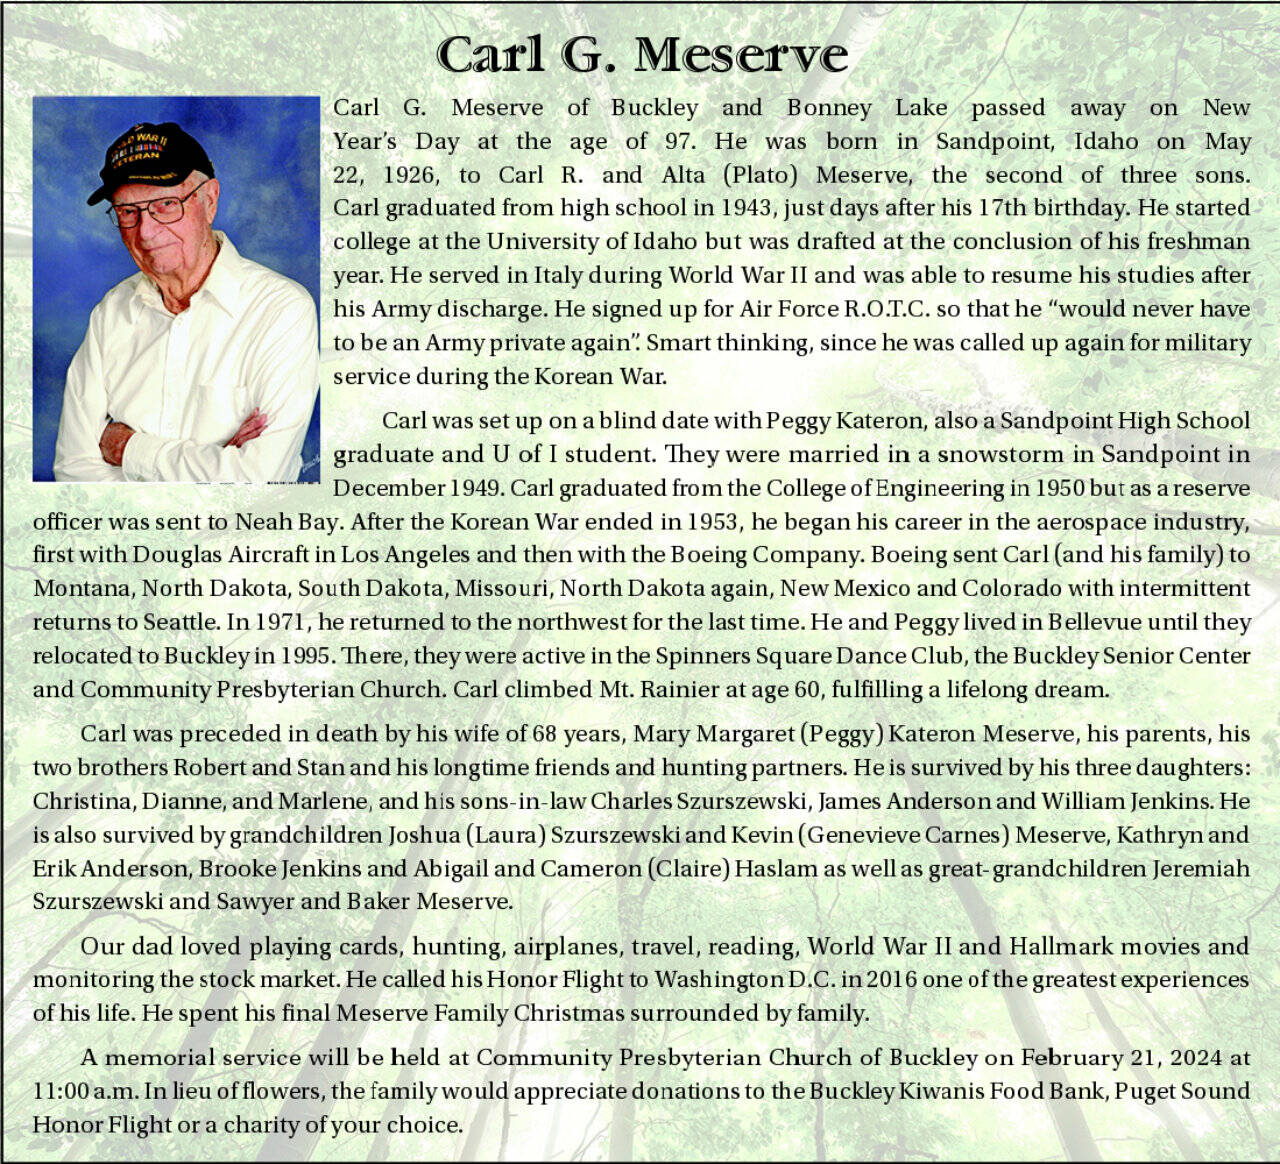 Carl Meserve